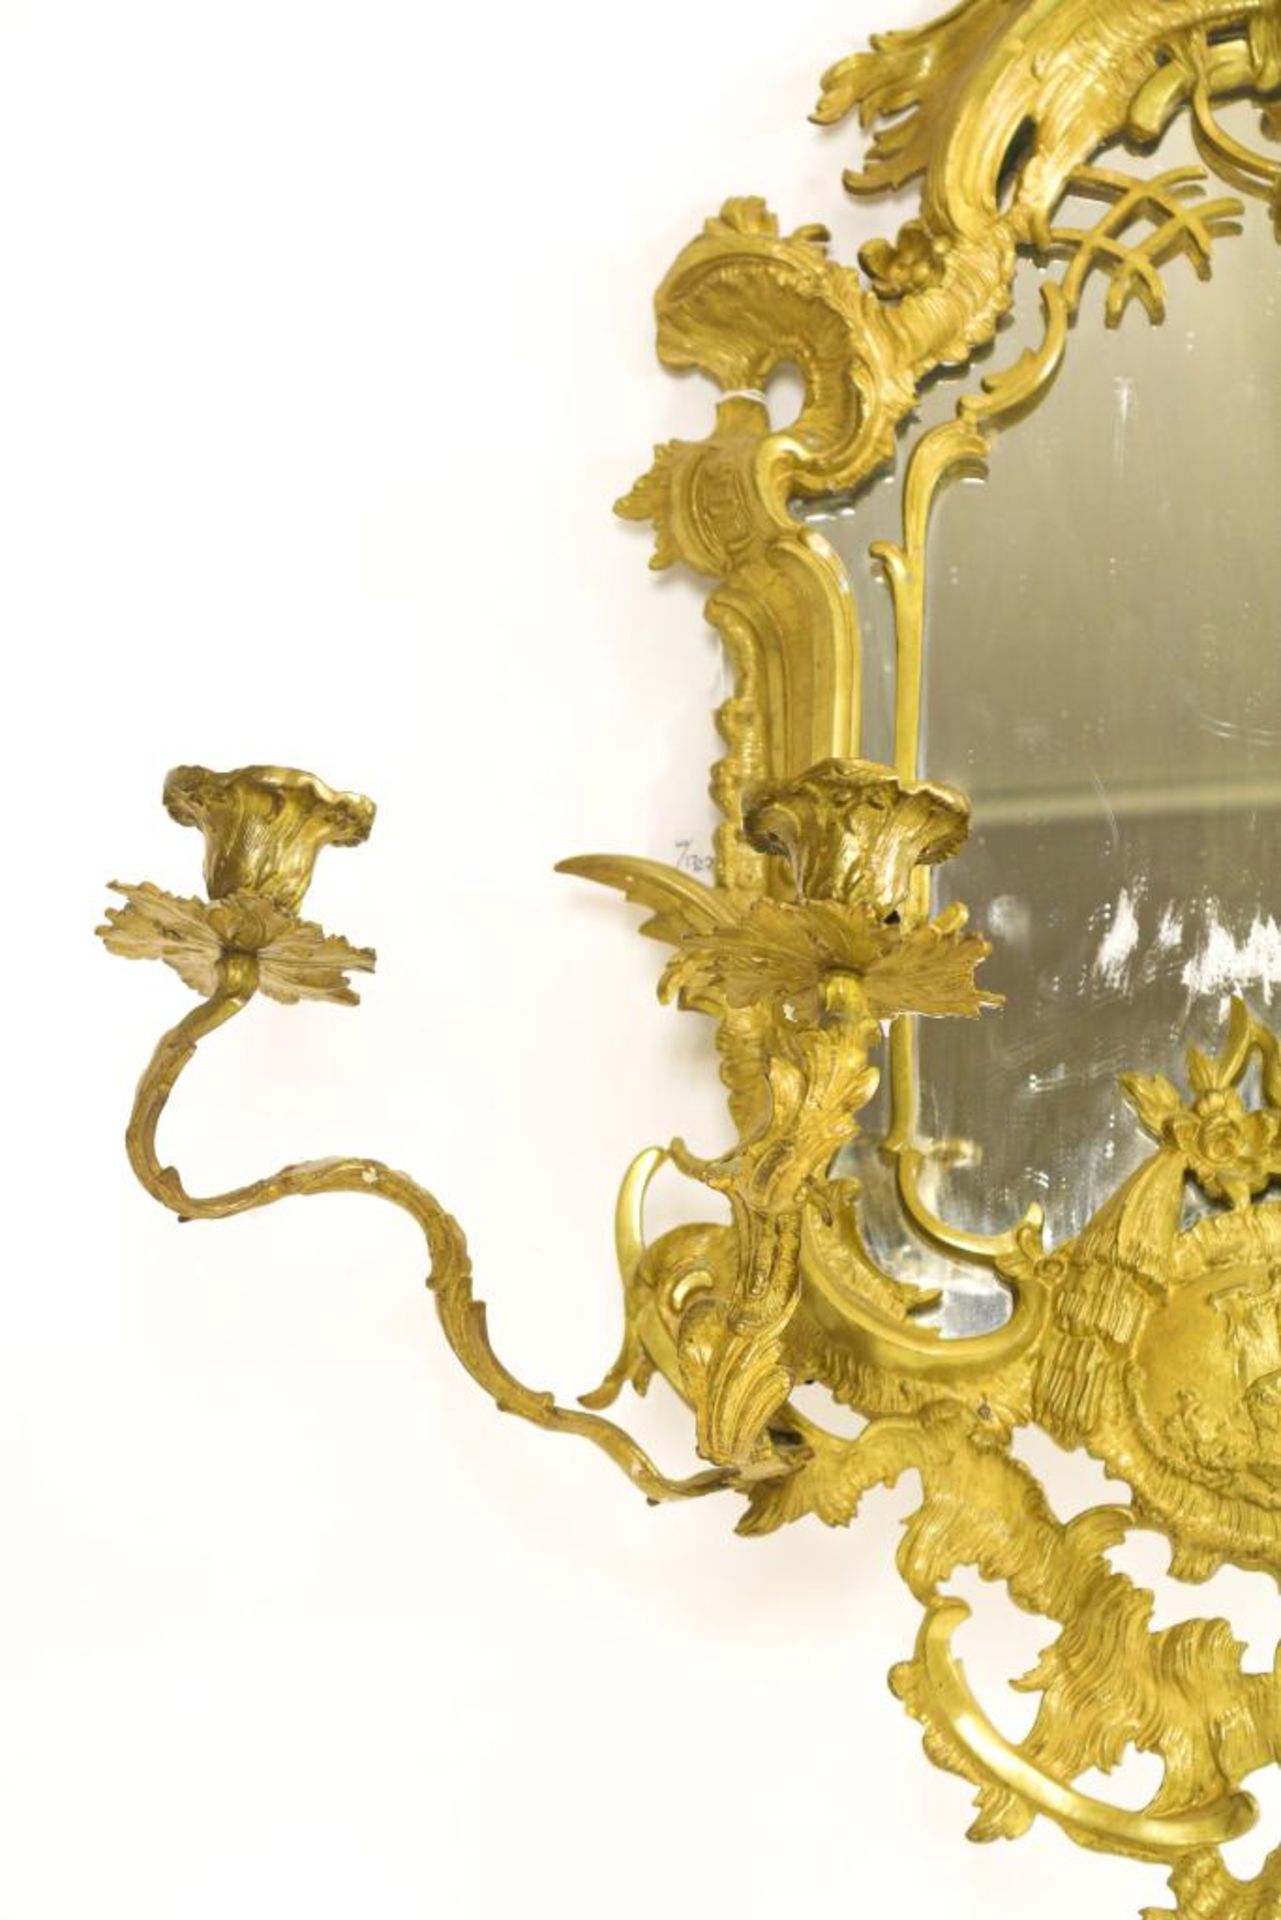 Bronzen Louis XV-stijl spiegel - Bild 4 aus 5